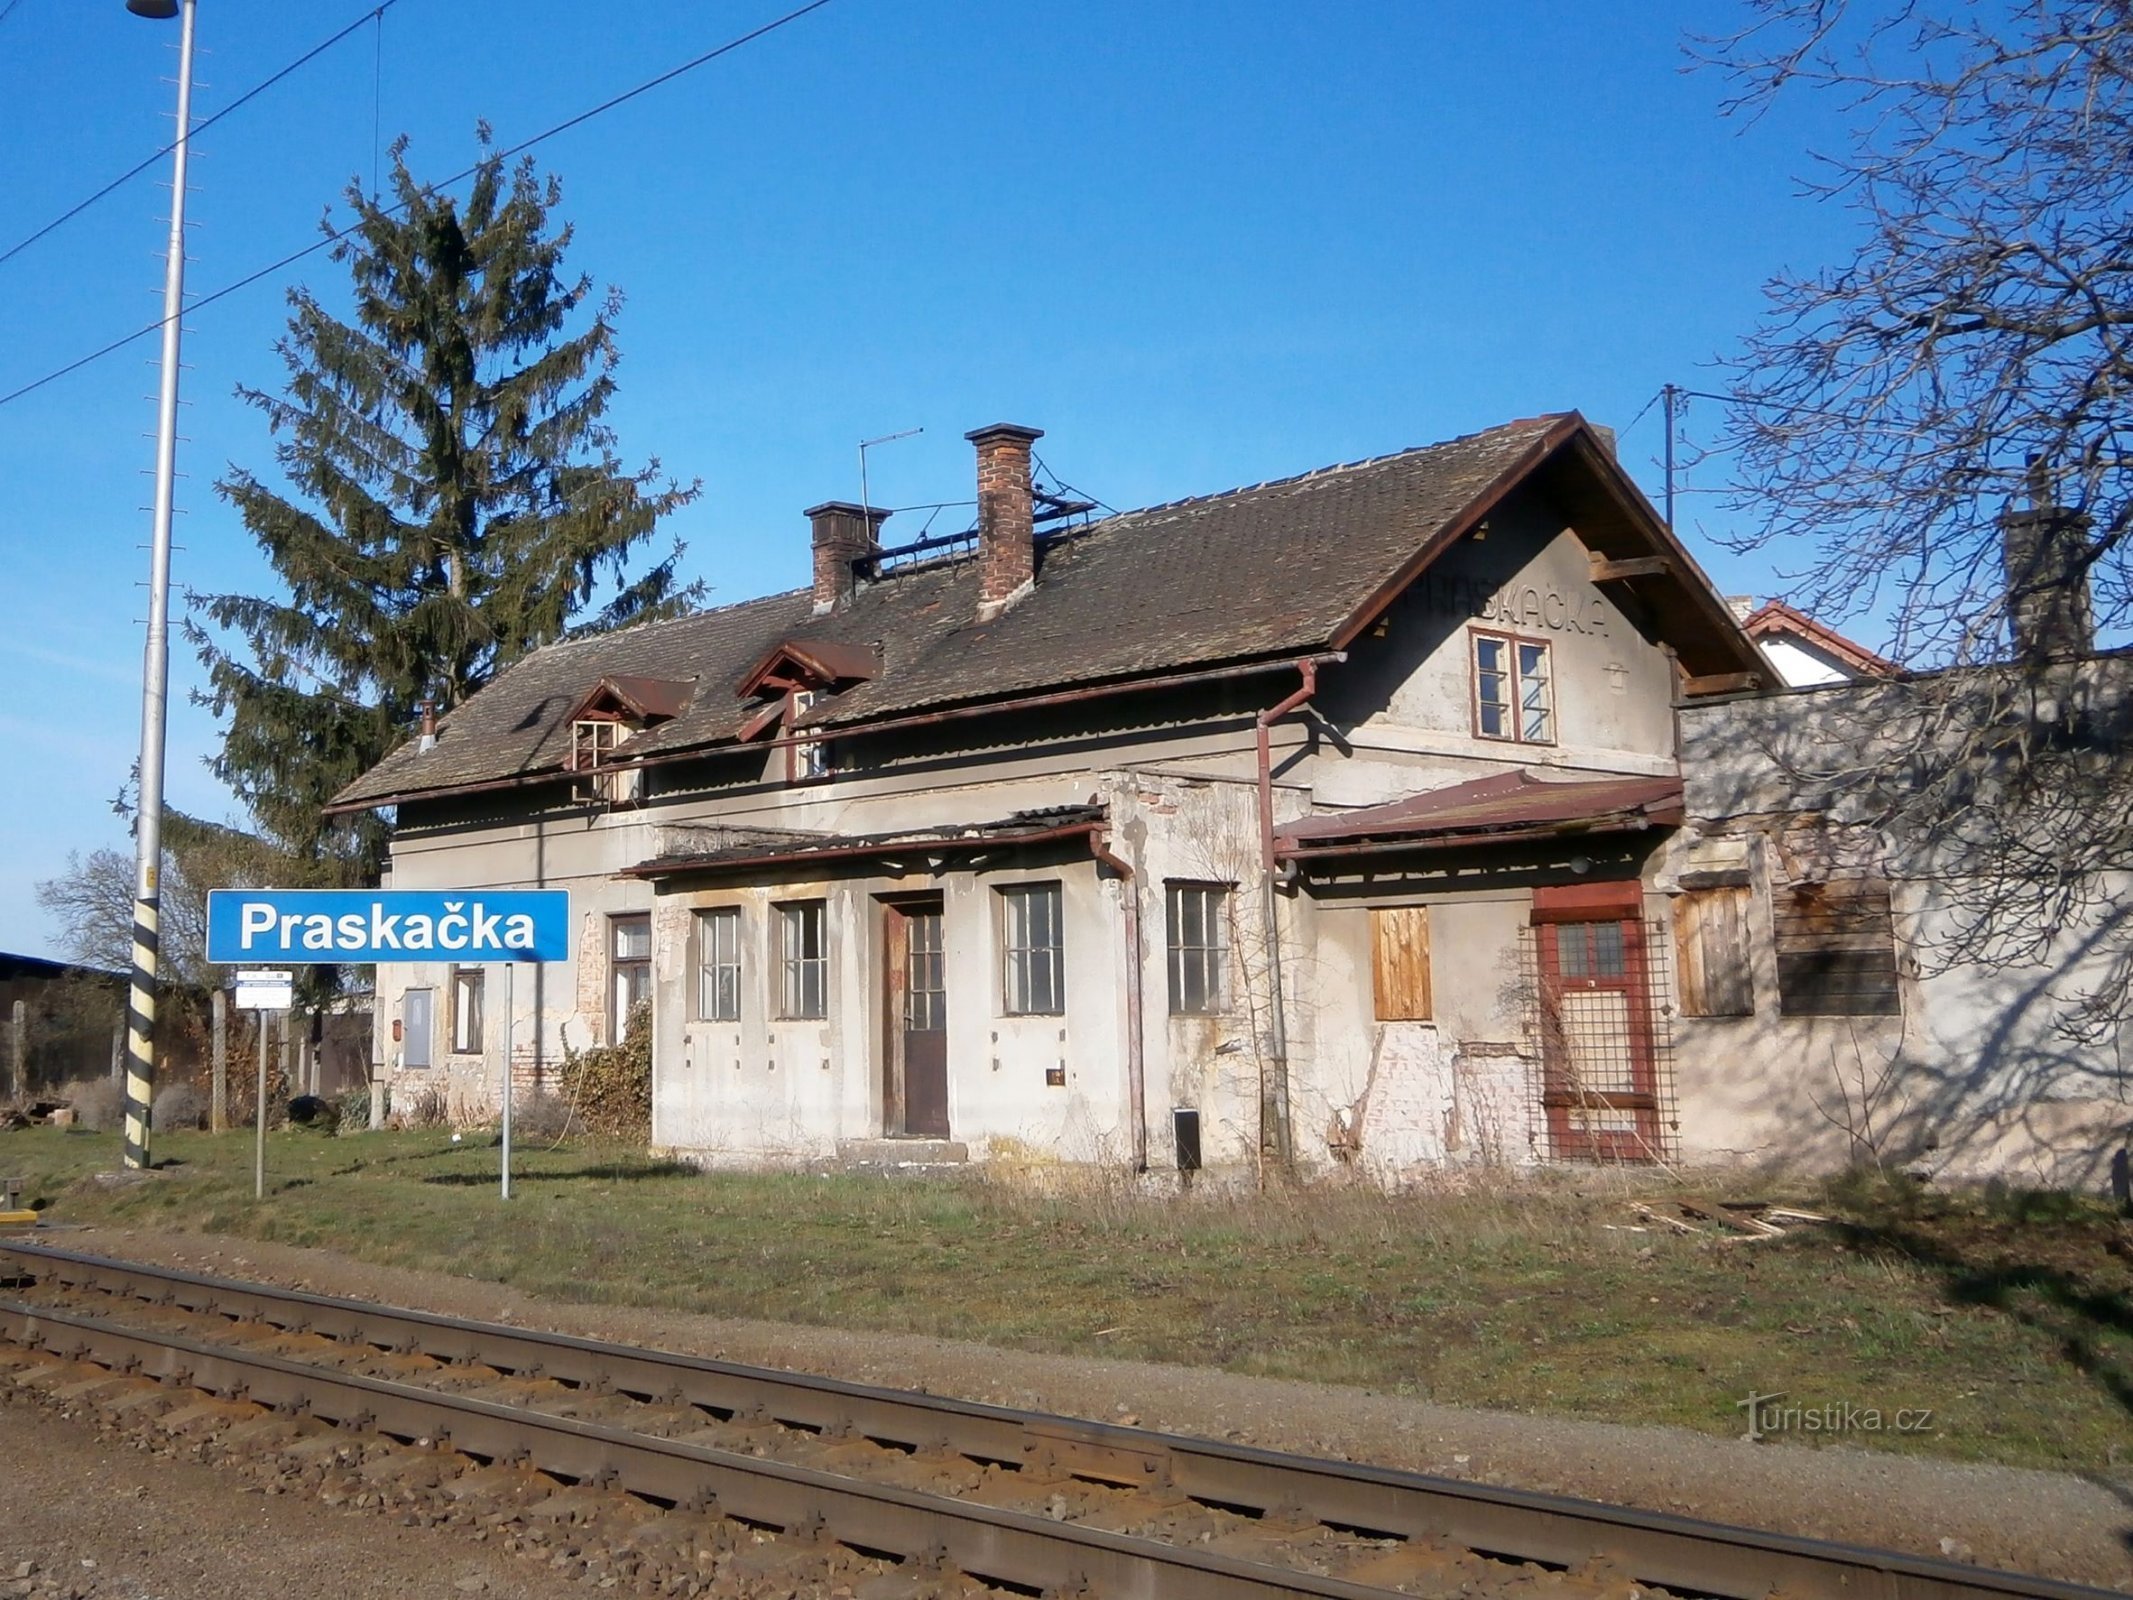 Nhà ga cũ đã bị phá bỏ (Praskačka, 26.3.2017/XNUMX/XNUMX)